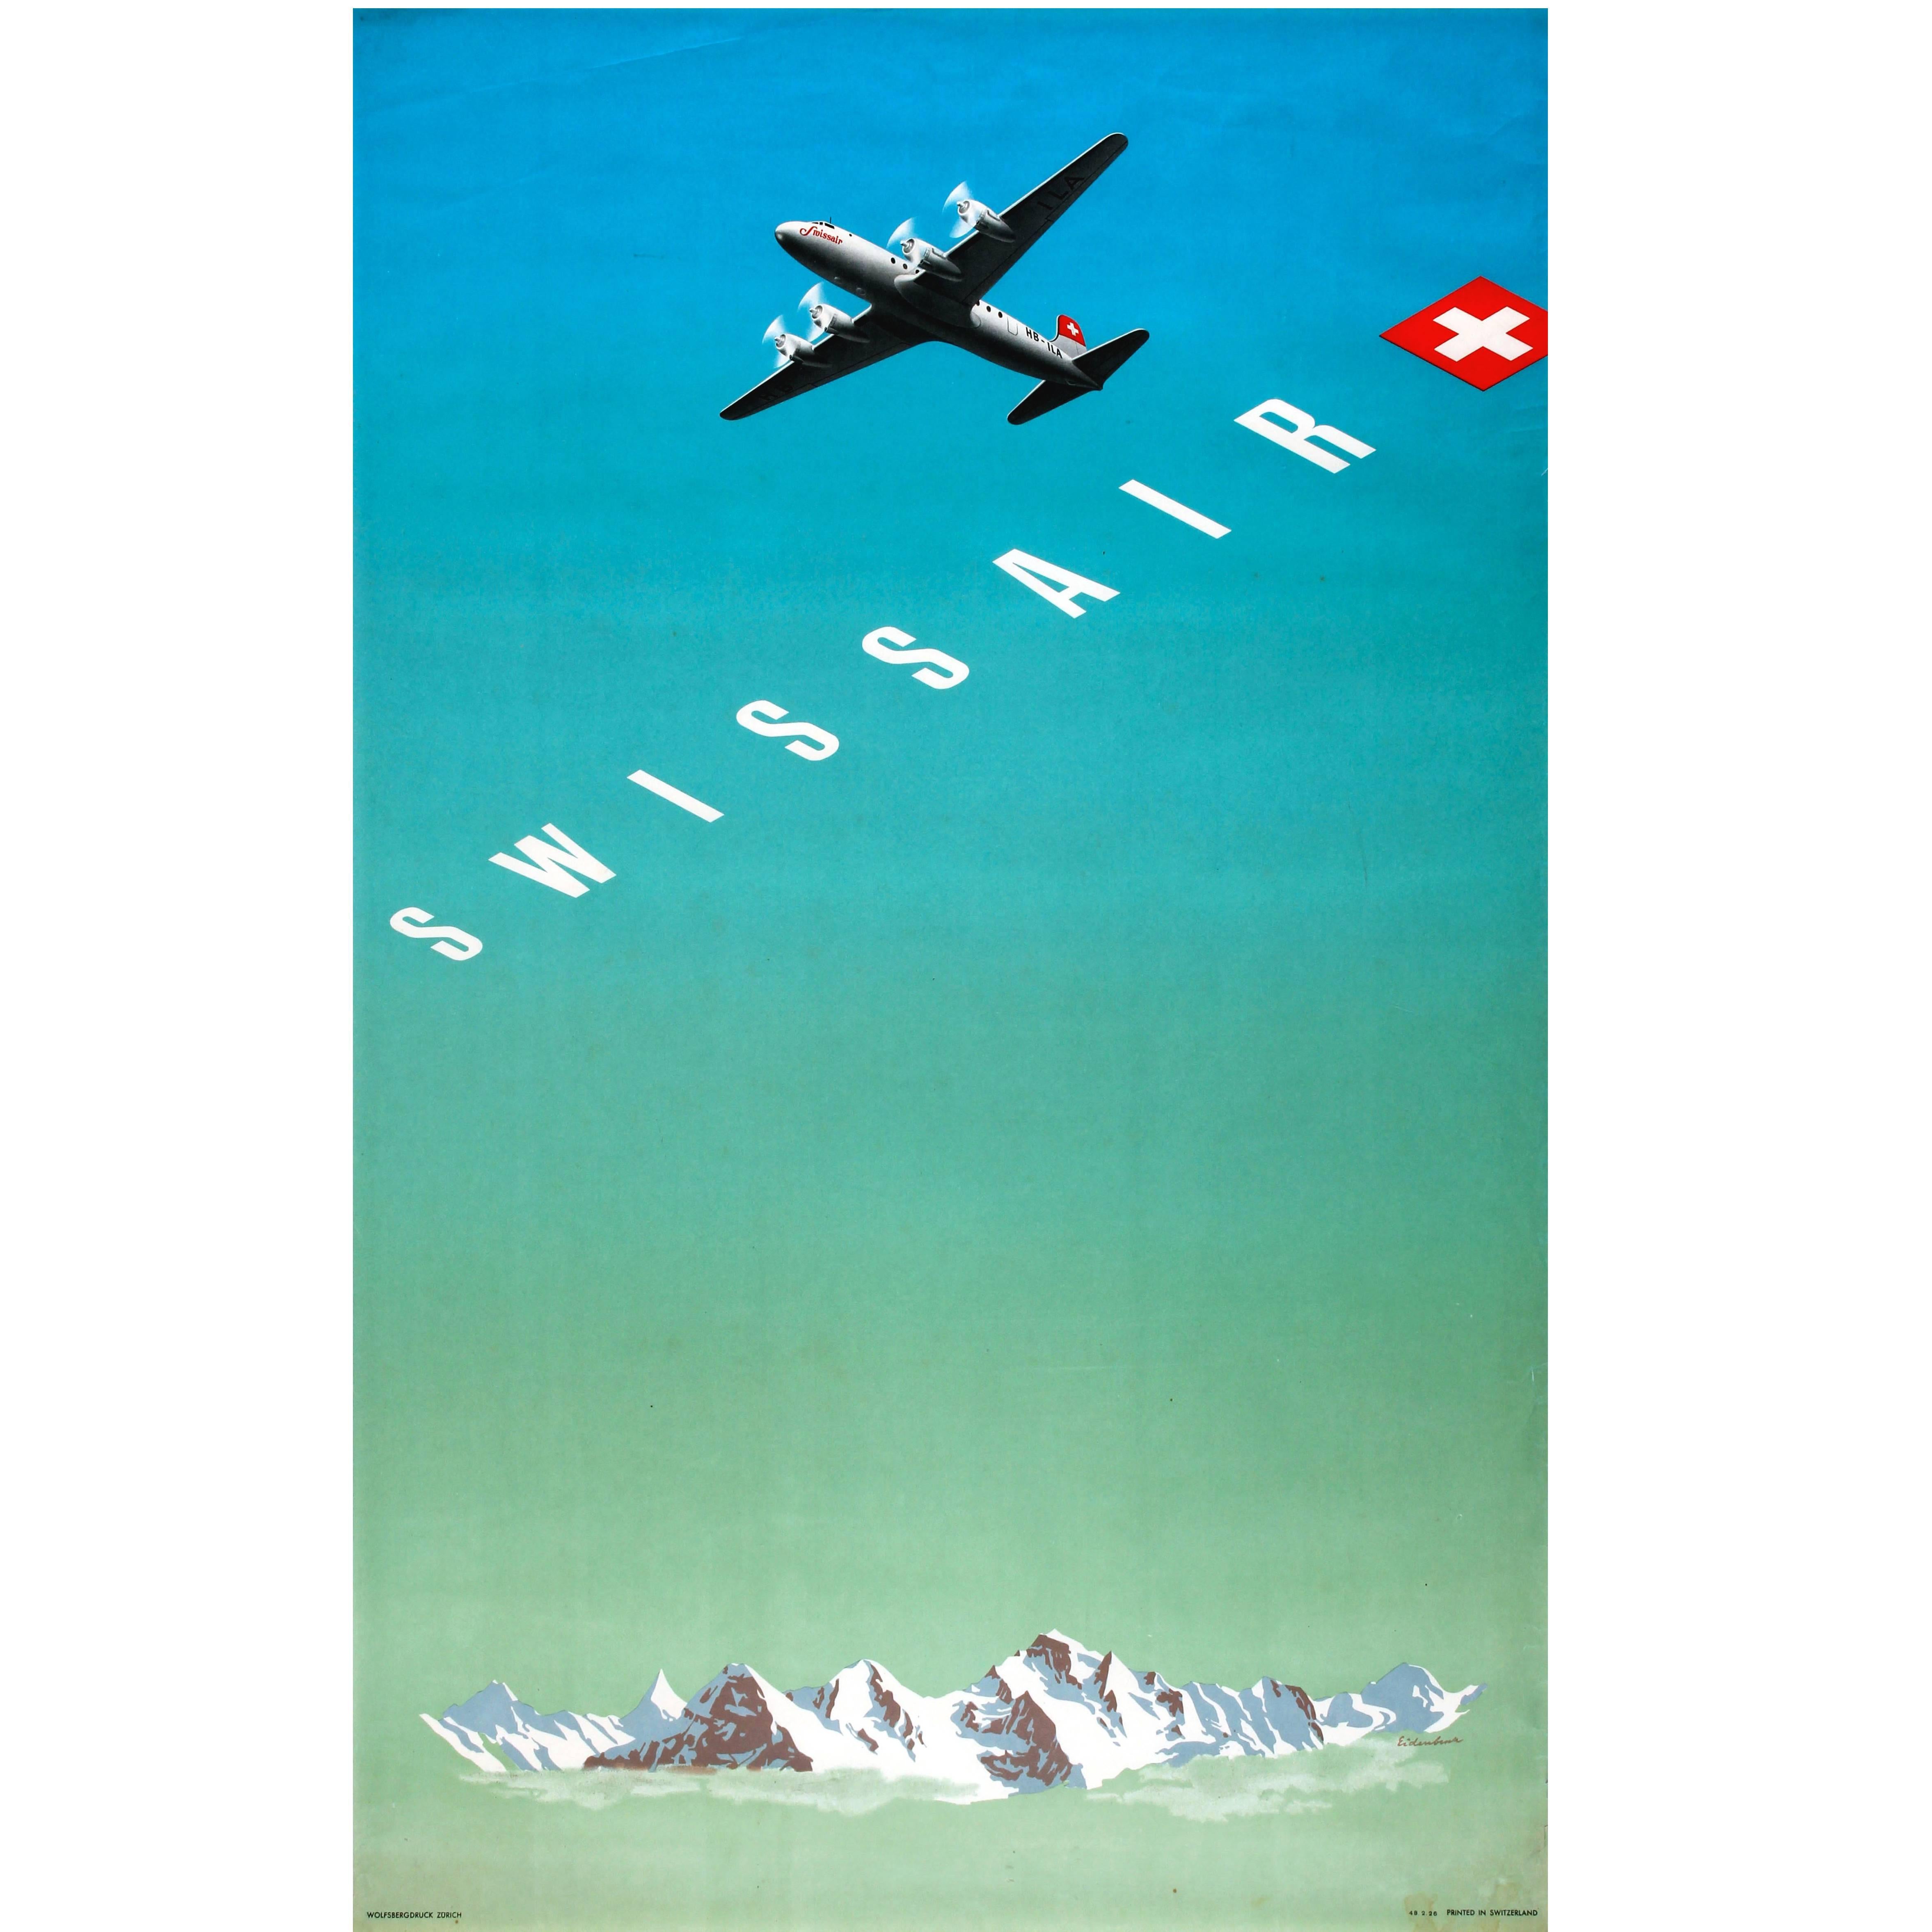 Original Vintage Travel Advertising Poster by Eidenbenz for Swissair Switzerland